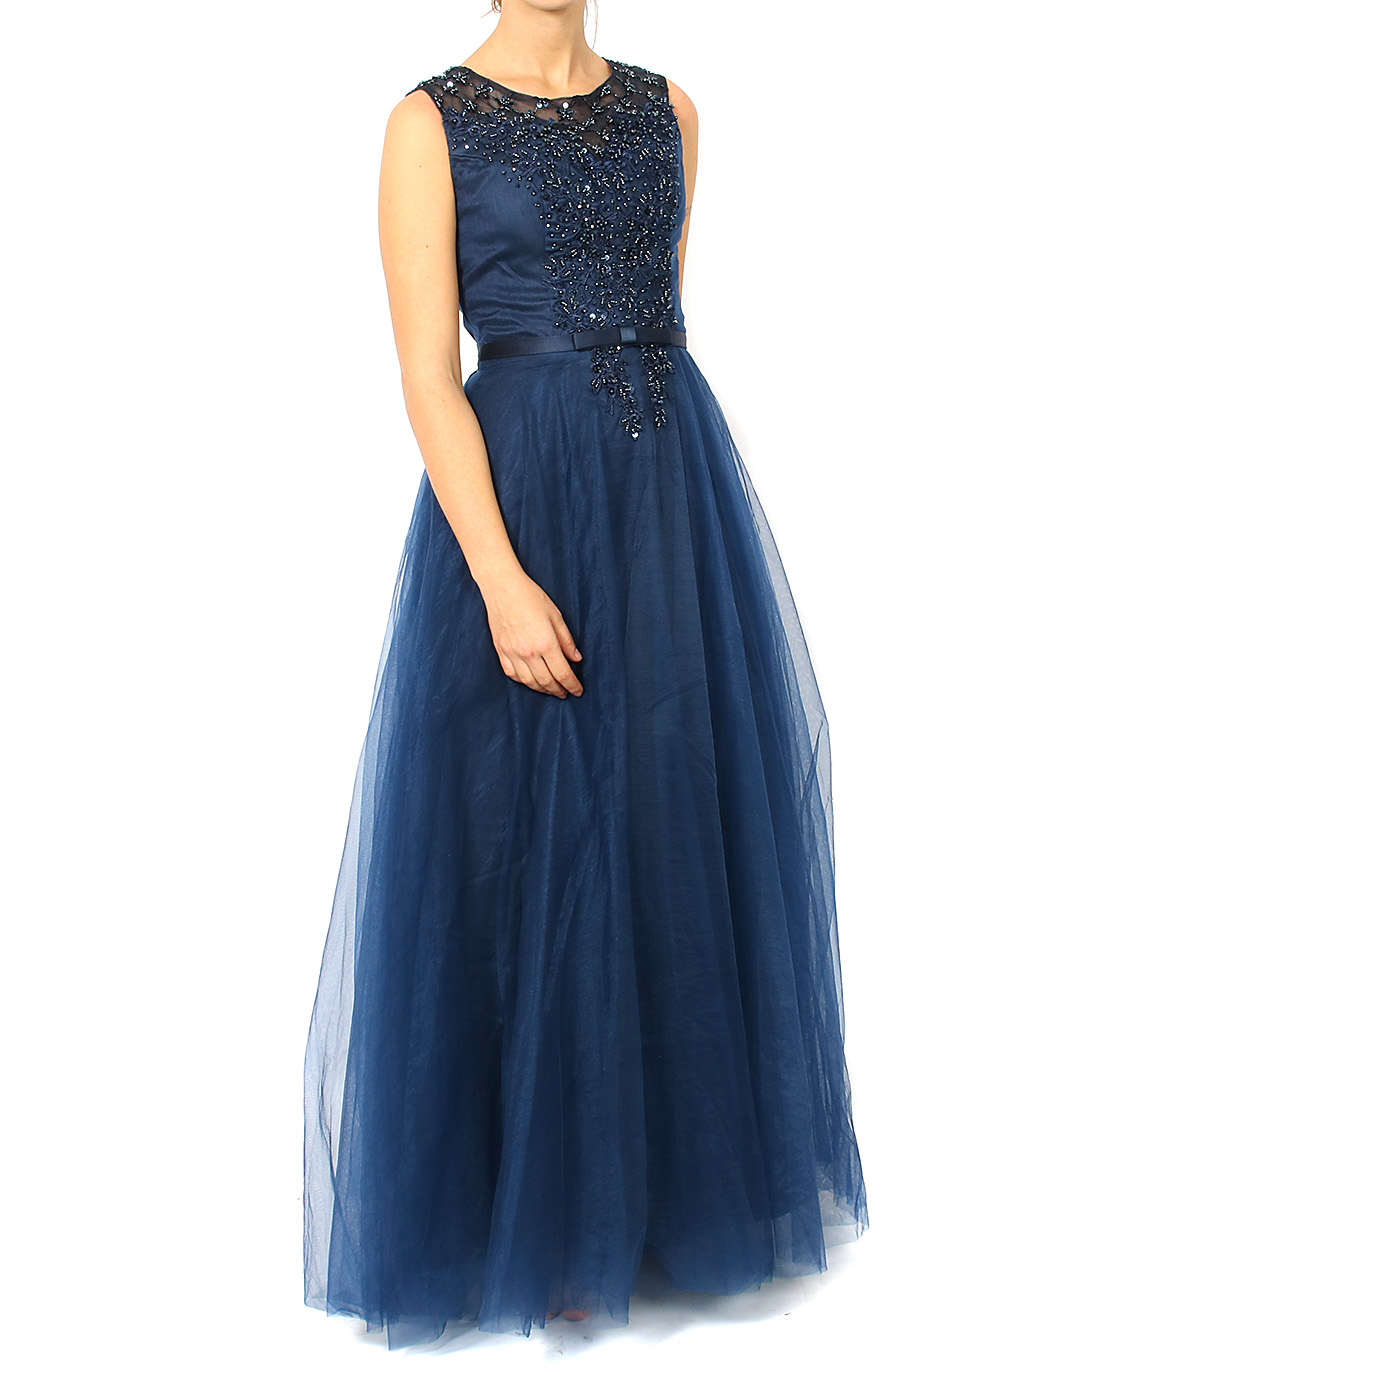 See through coin Correlate MIT – Vestito elegante da donna in tulle con corpetto di strass – Blu –  MitShopping – Abbigliamento e scarpe